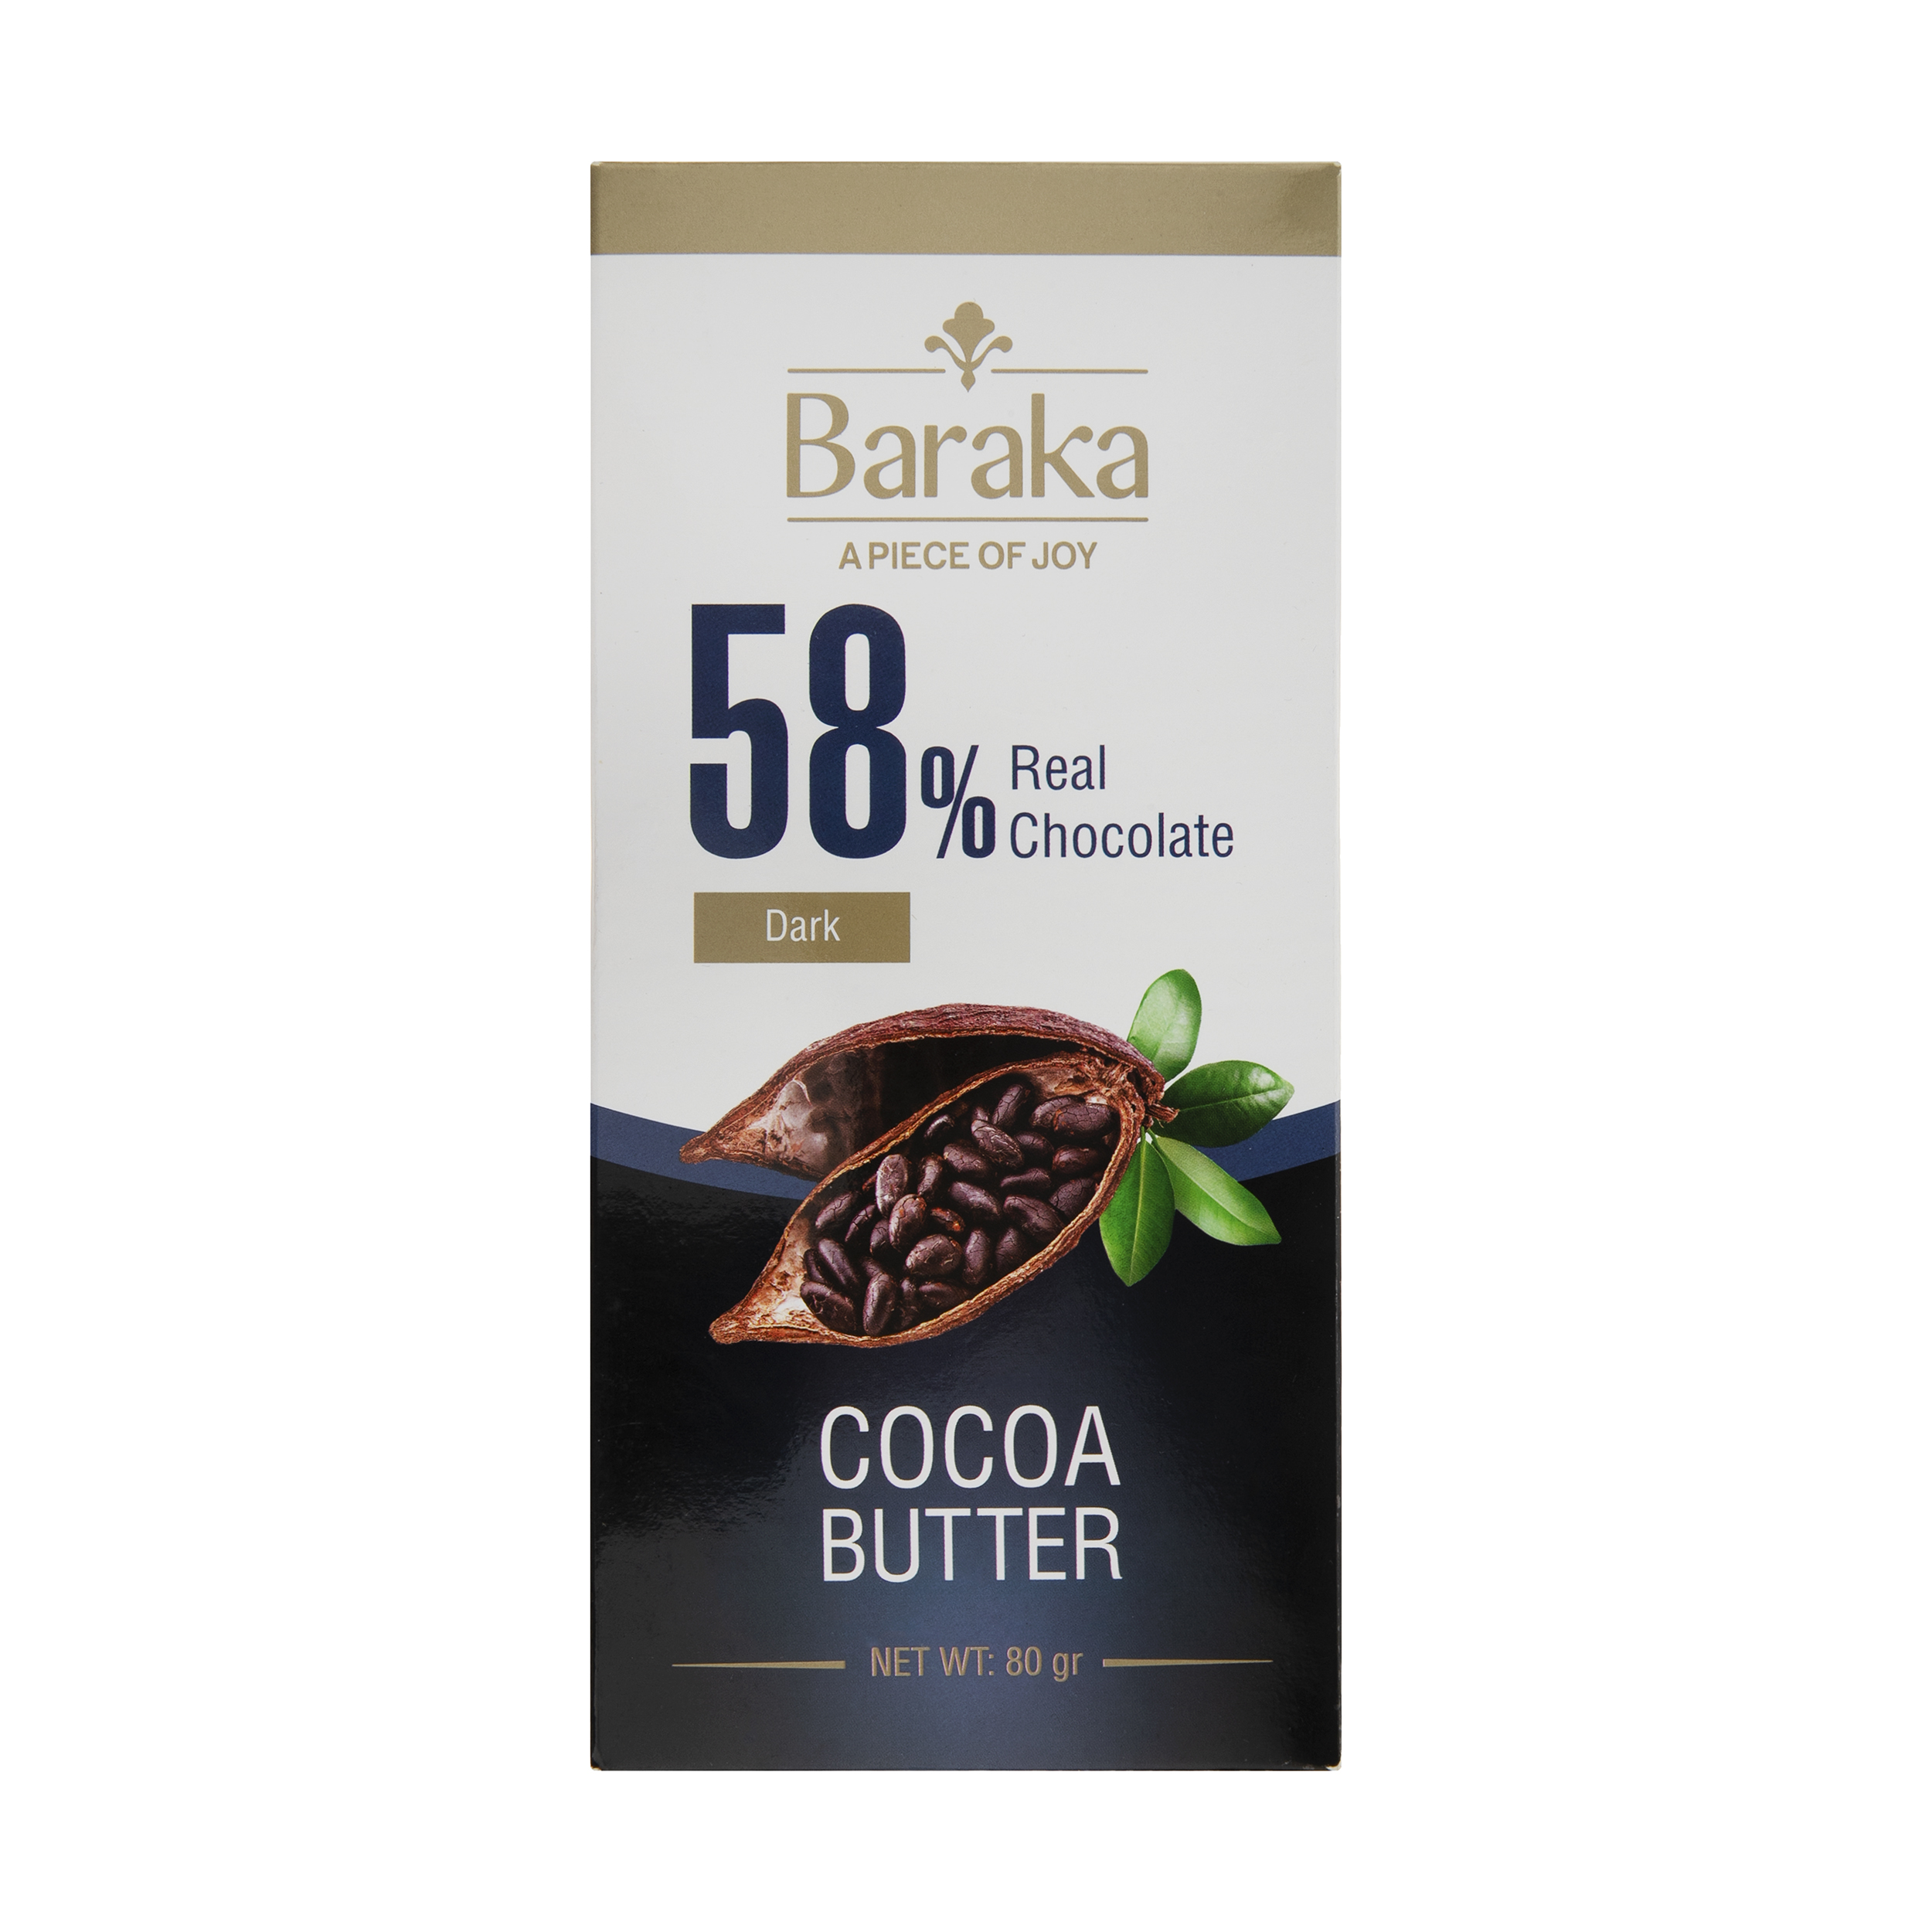 شکلات تلخ 58 درصد باراکا - 80 گرم  